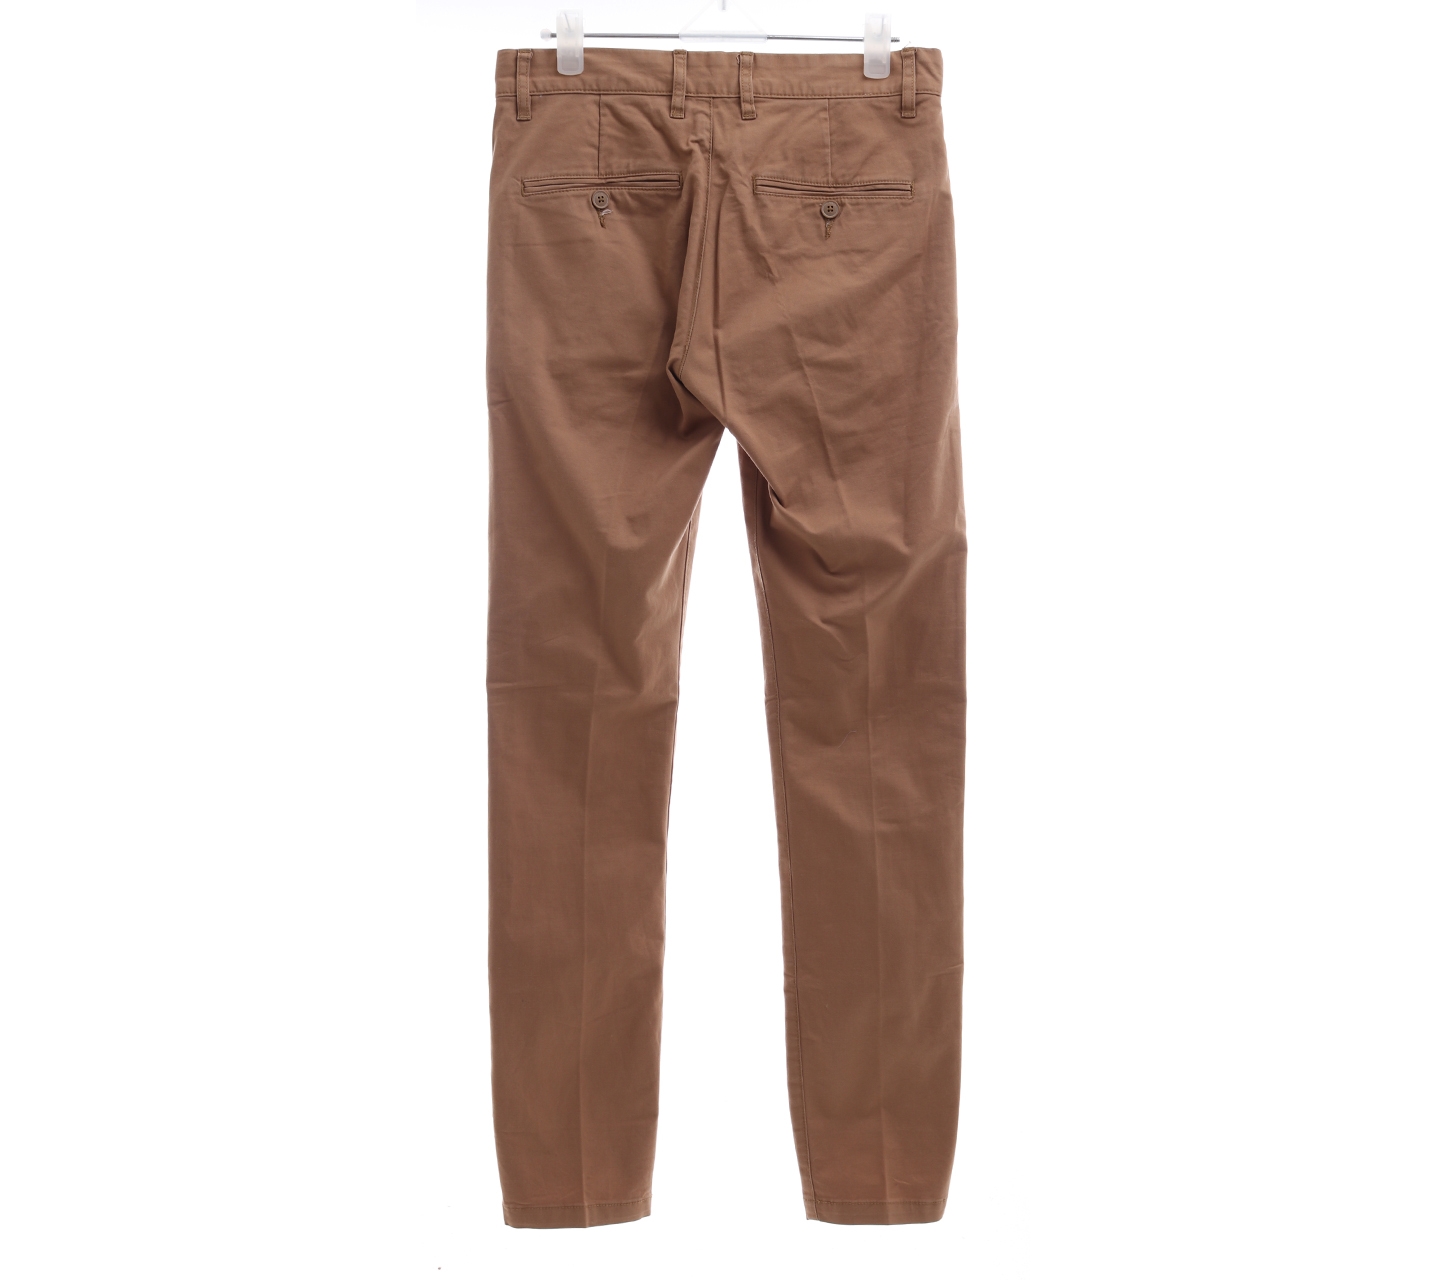 H&M brown long pants